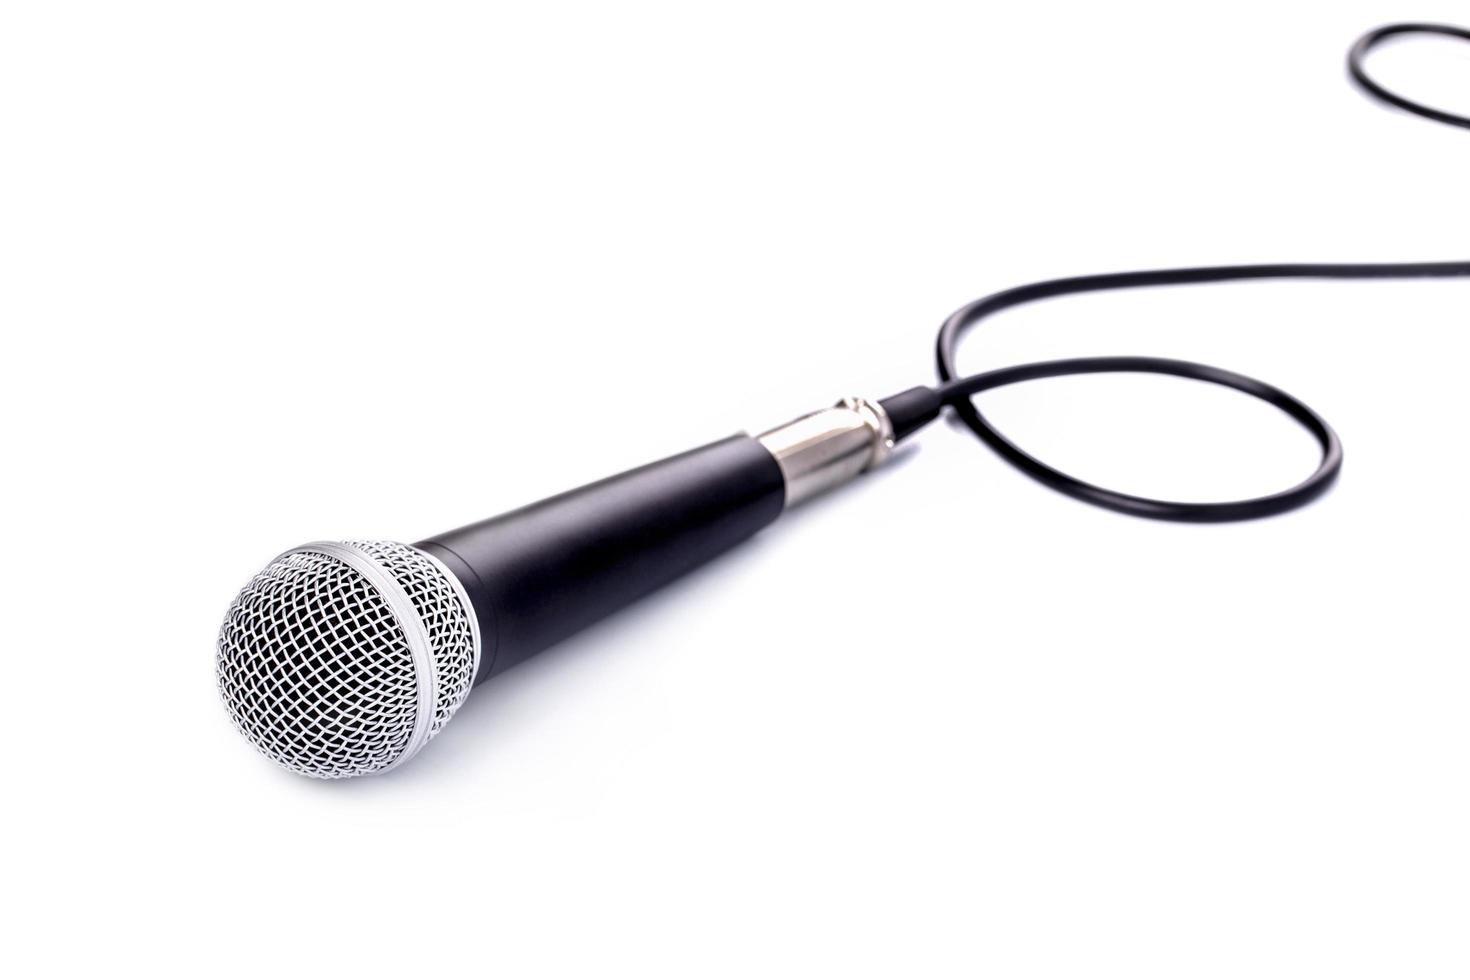 microfone em um fundo branco foto